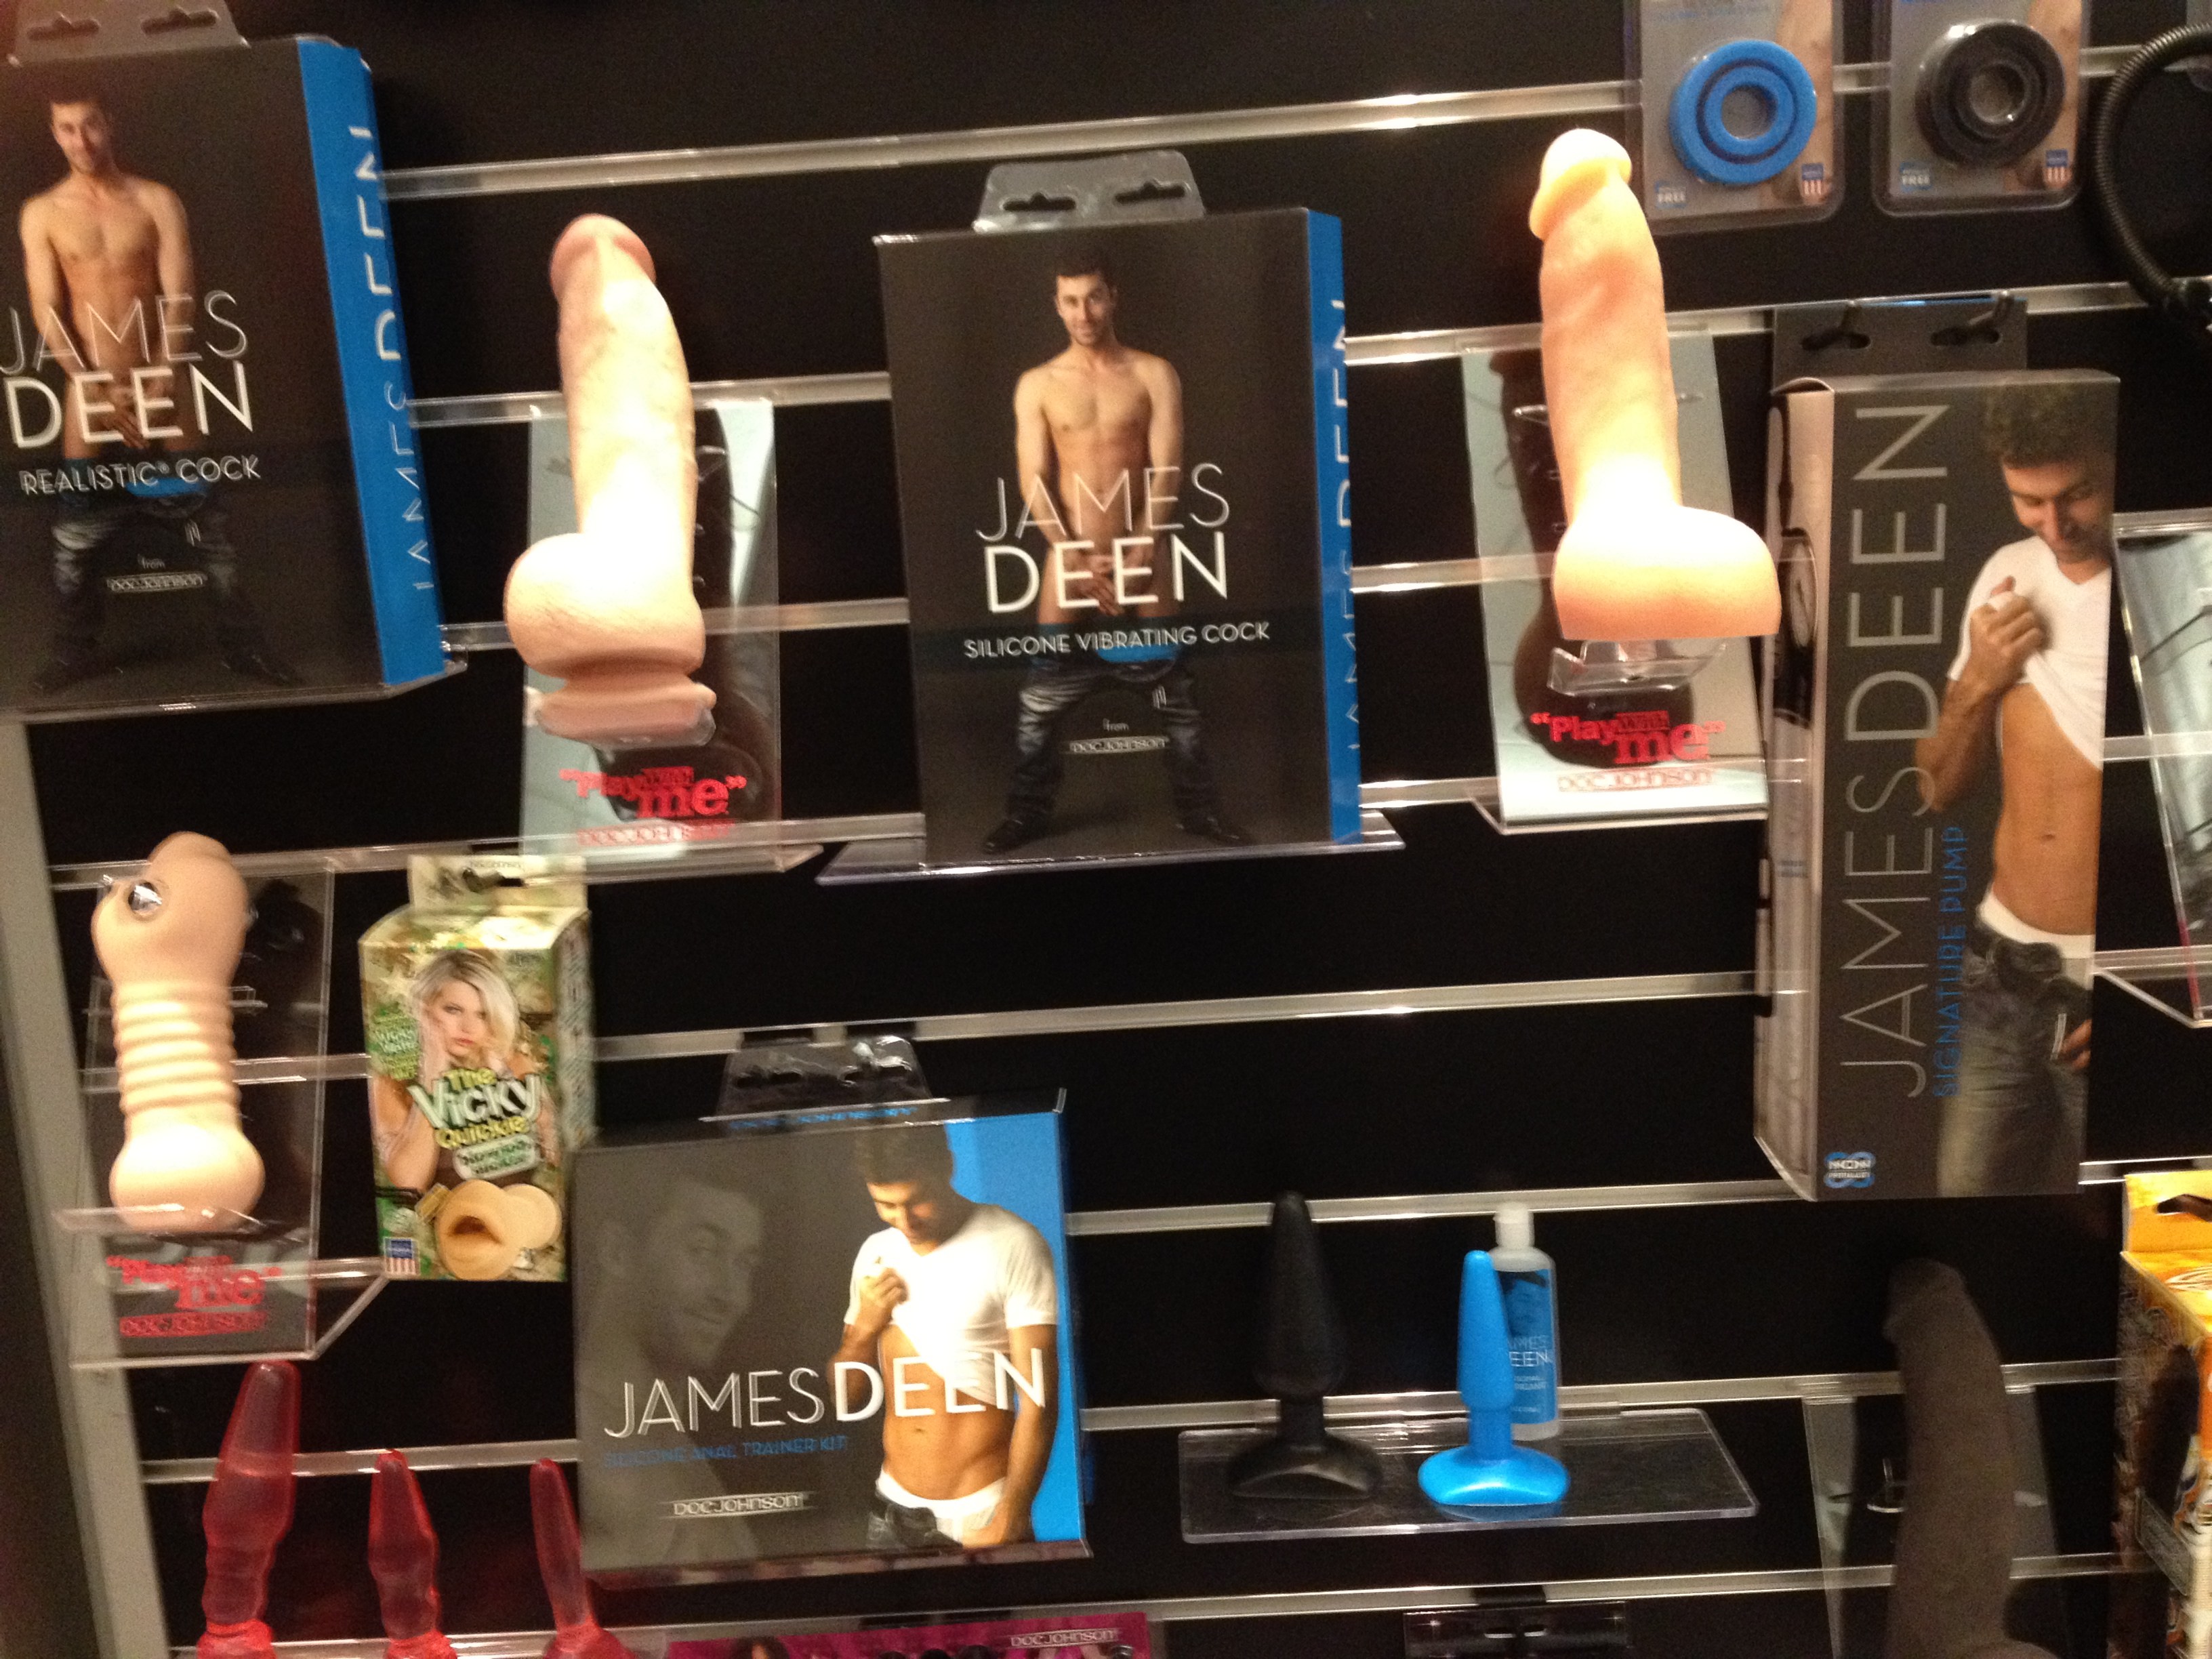 James Deen Sex Toy Line Coming